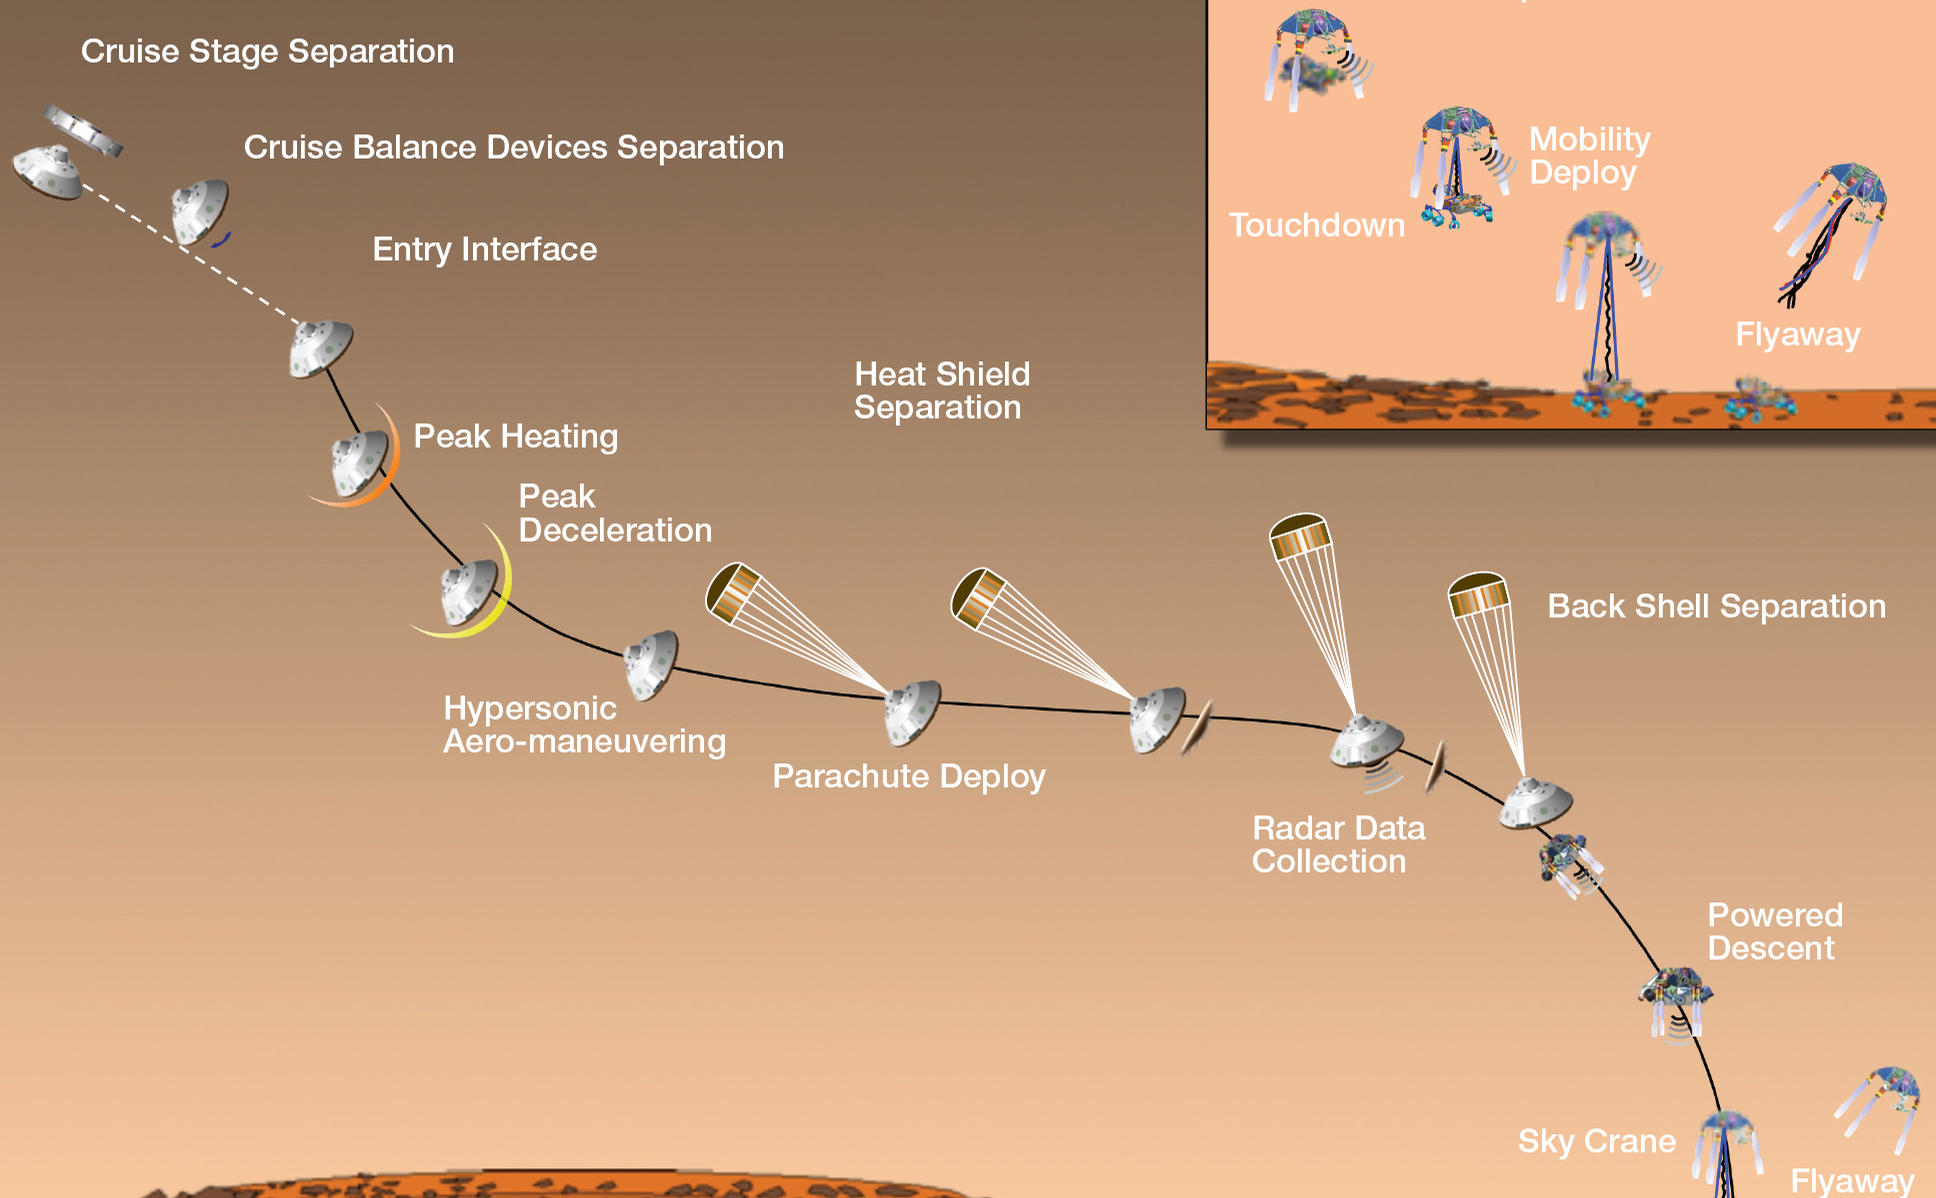 Timeline of Major Mission Events During Curiosity's Landing